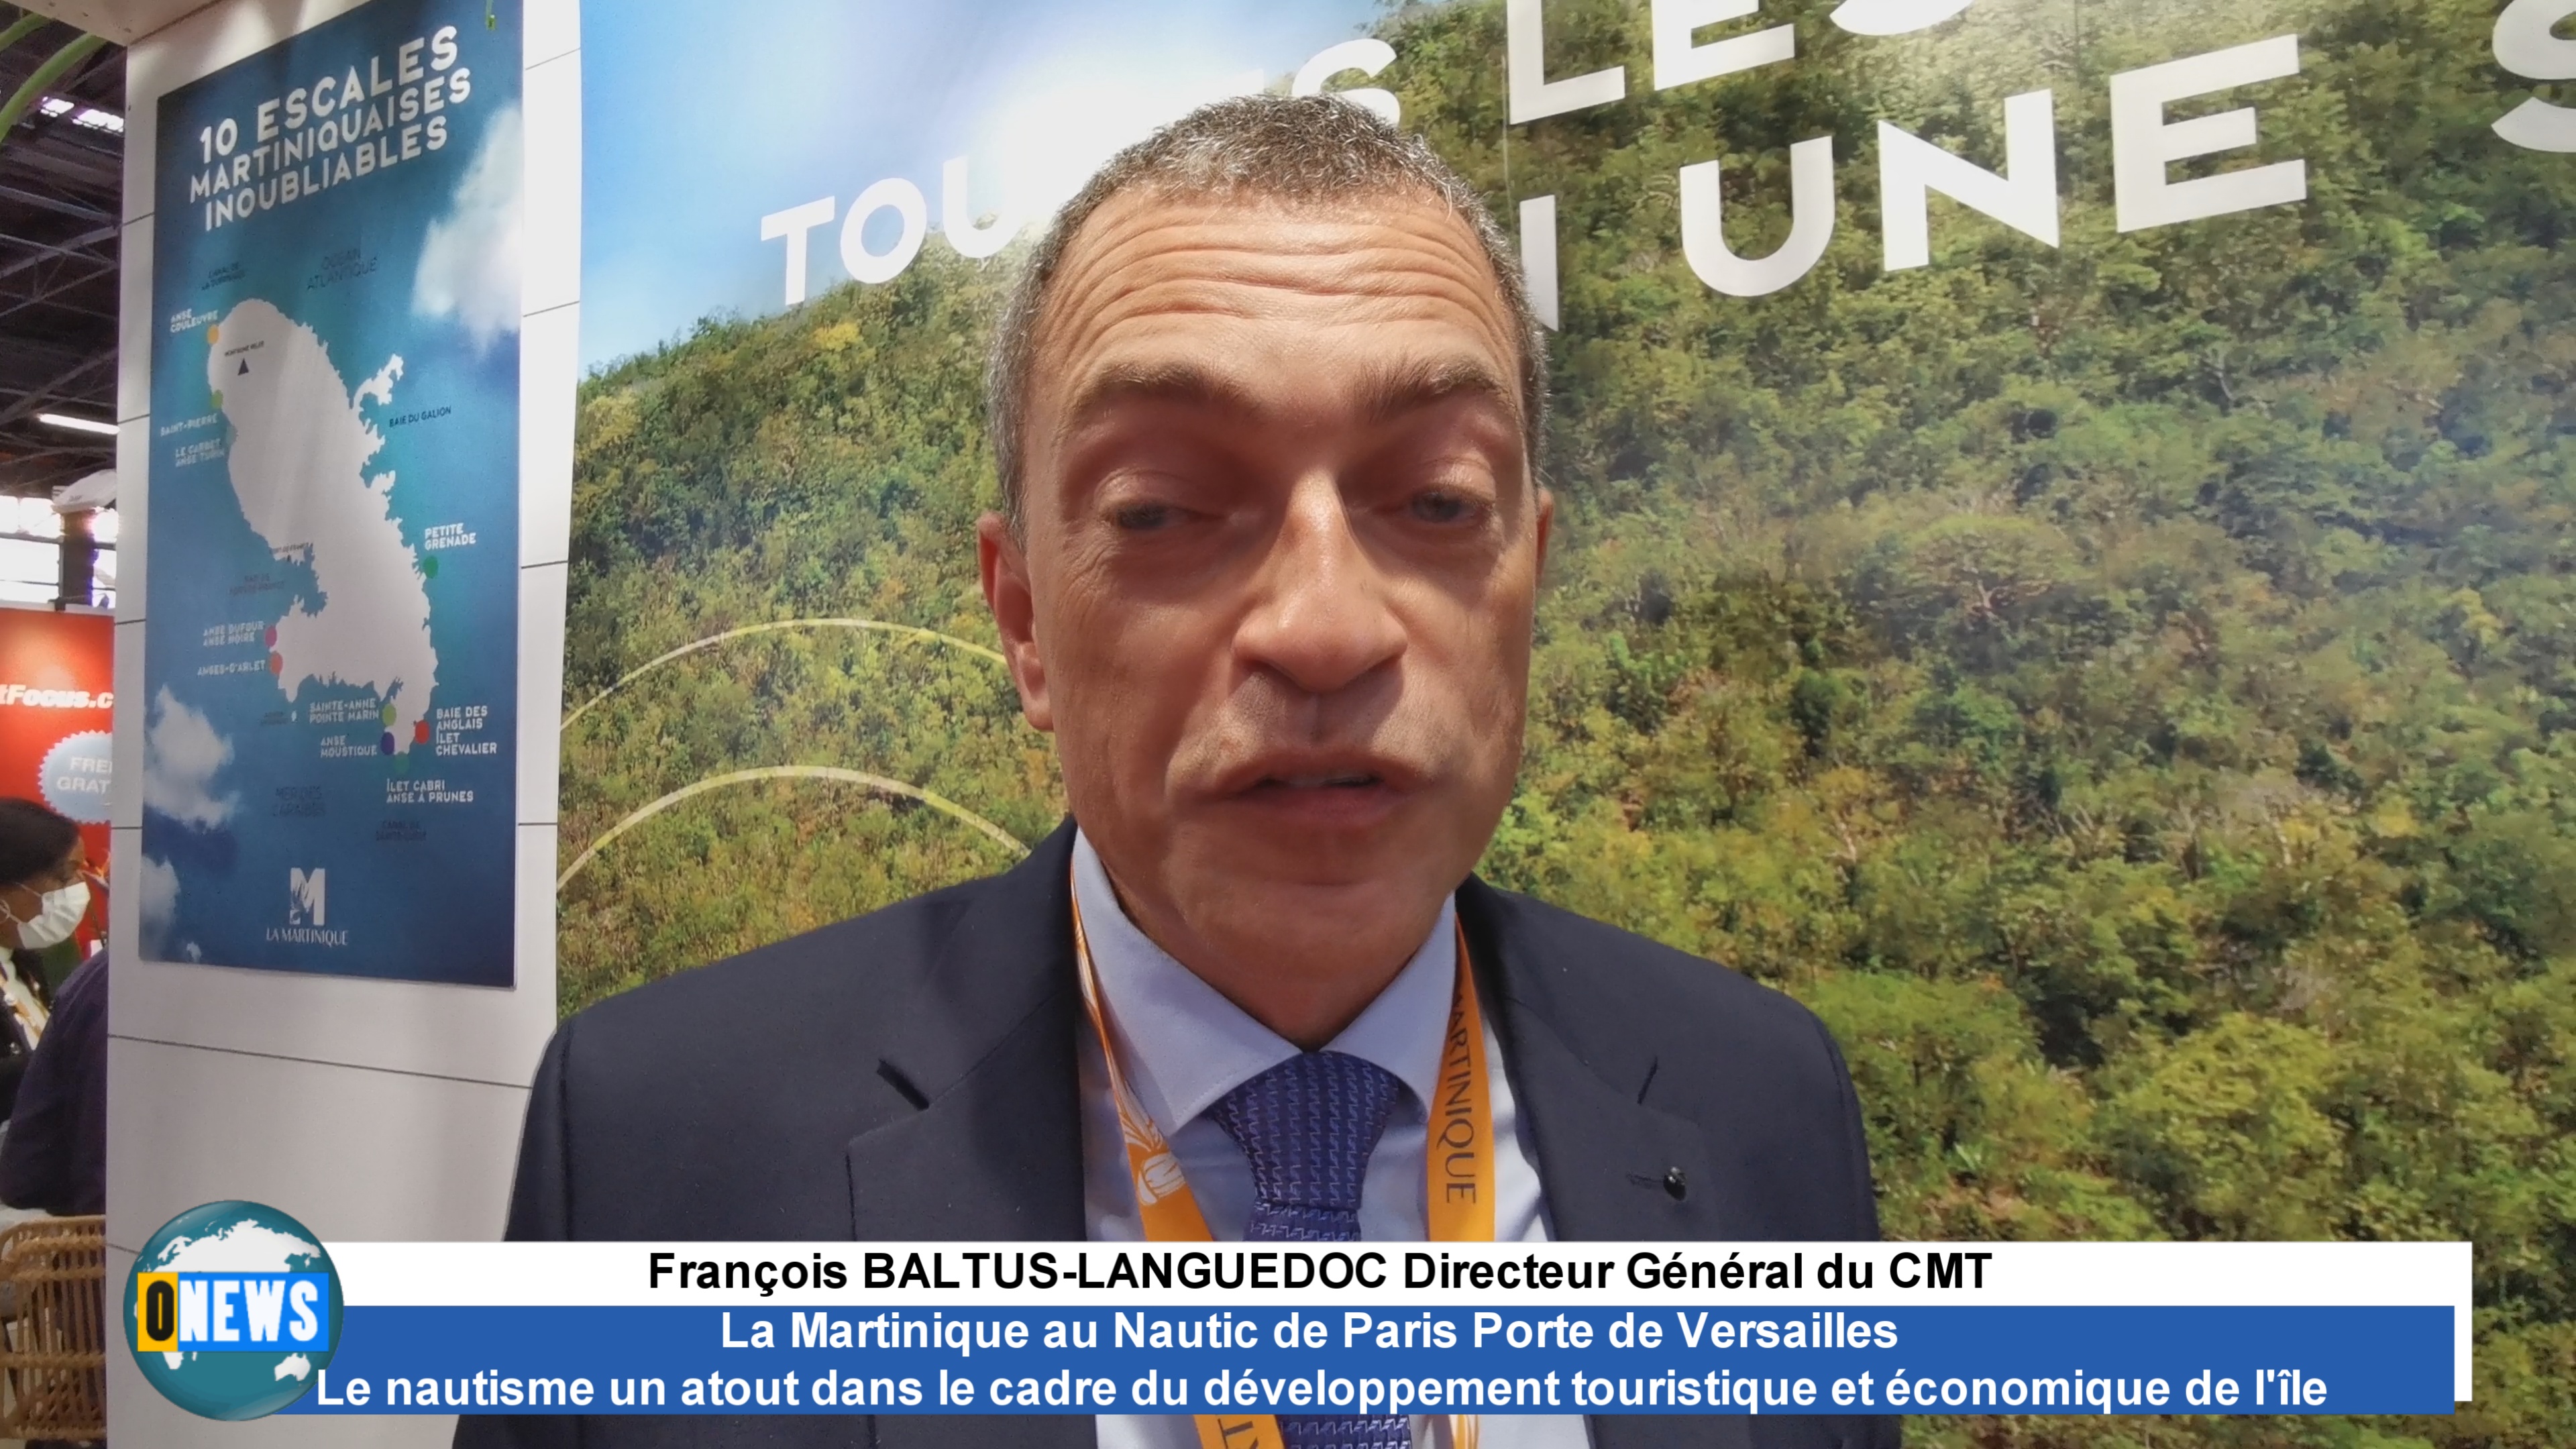 [Vidéo] La Martinique au Nautic de Paris Porte de Versailles. Interview du Directeur CMT François BALTUS-LANGUEDOC